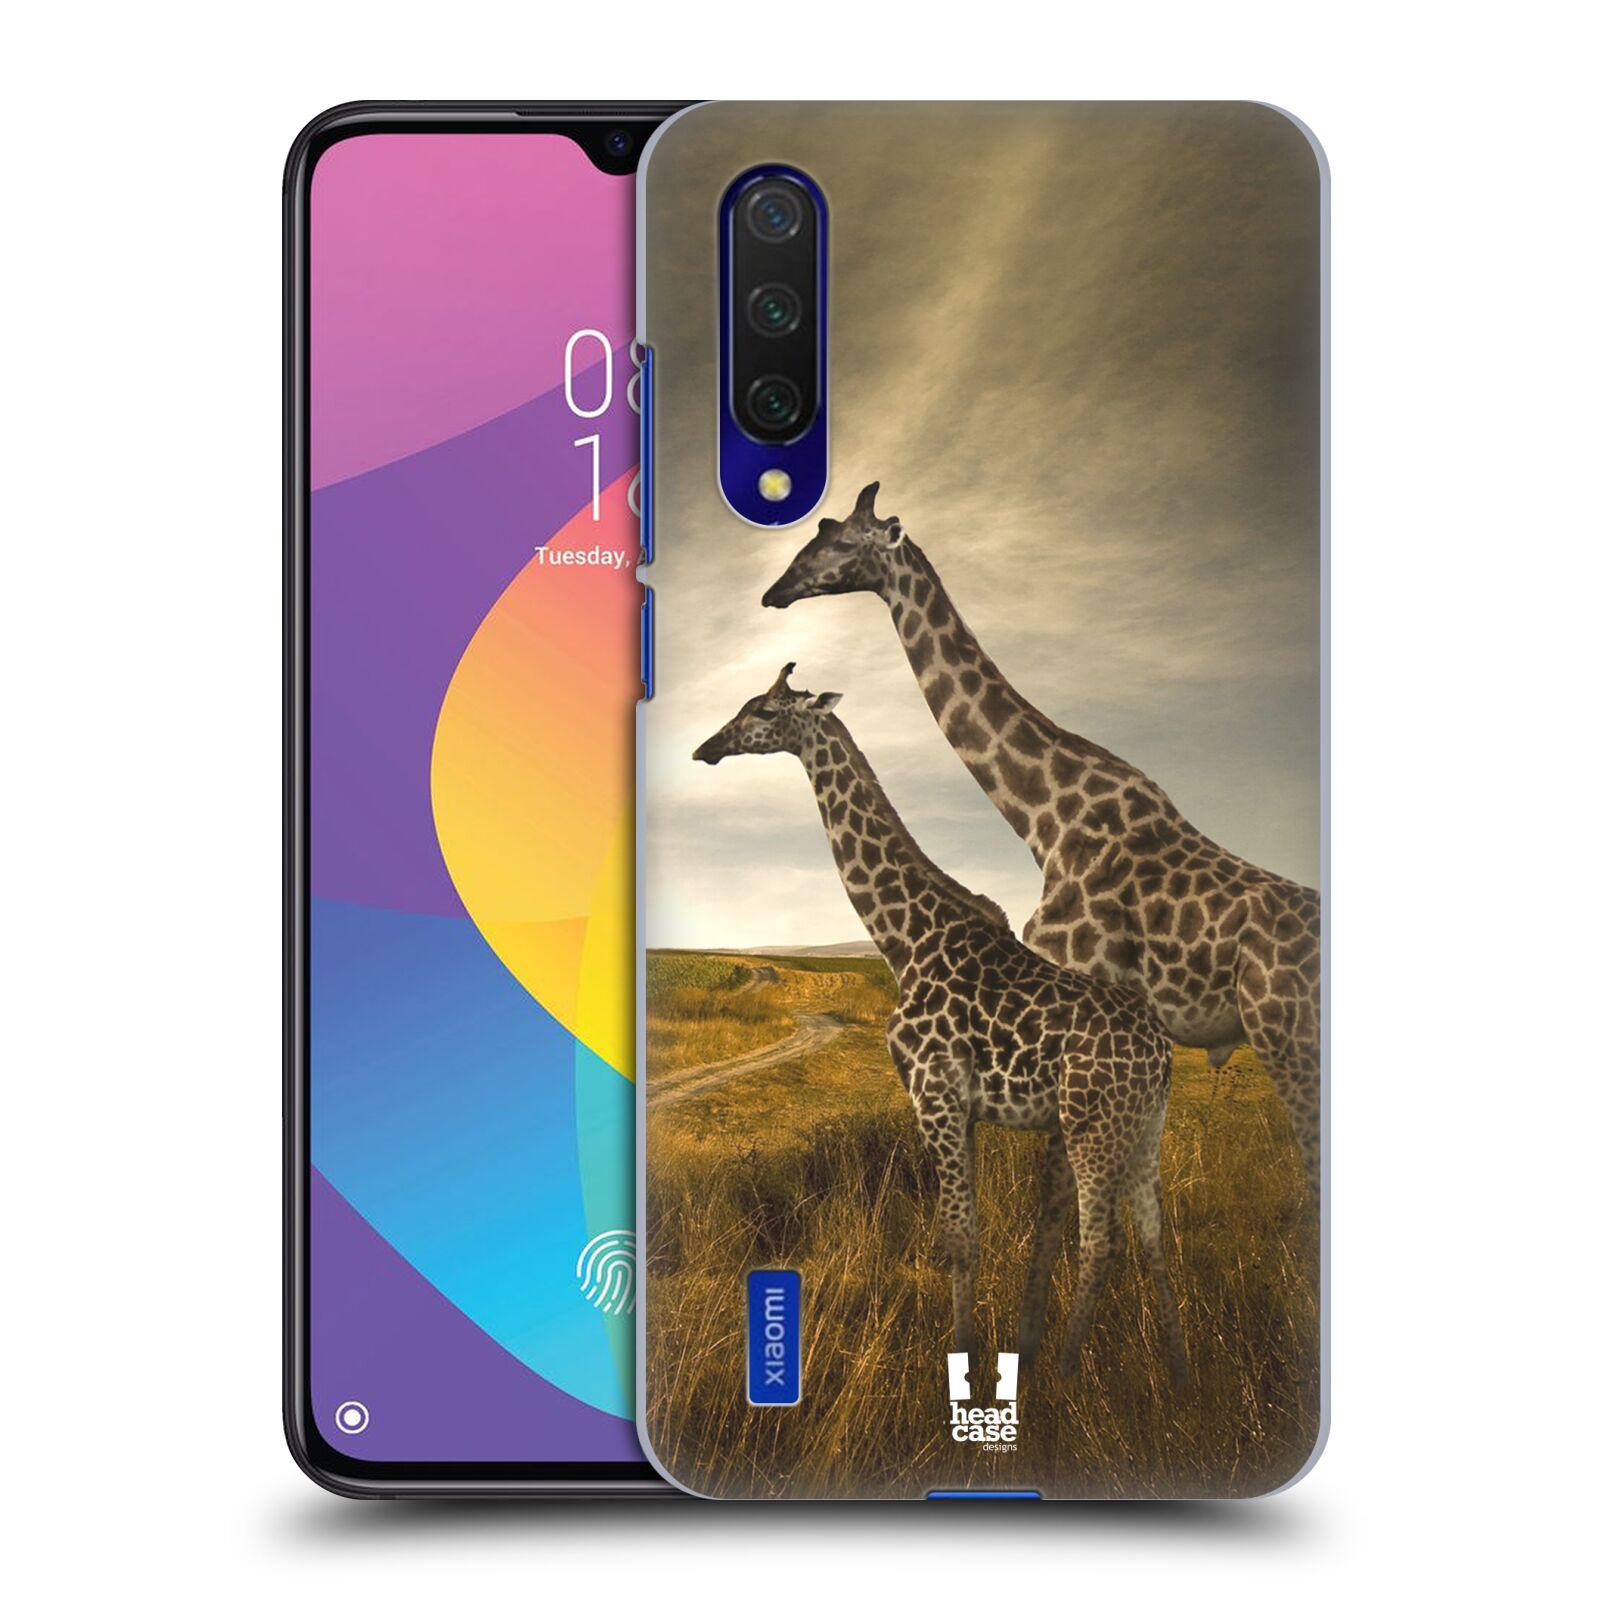 Zadní obal pro mobil Xiaomi Mi 9 LITE - HEAD CASE - Svět zvířat žirafy